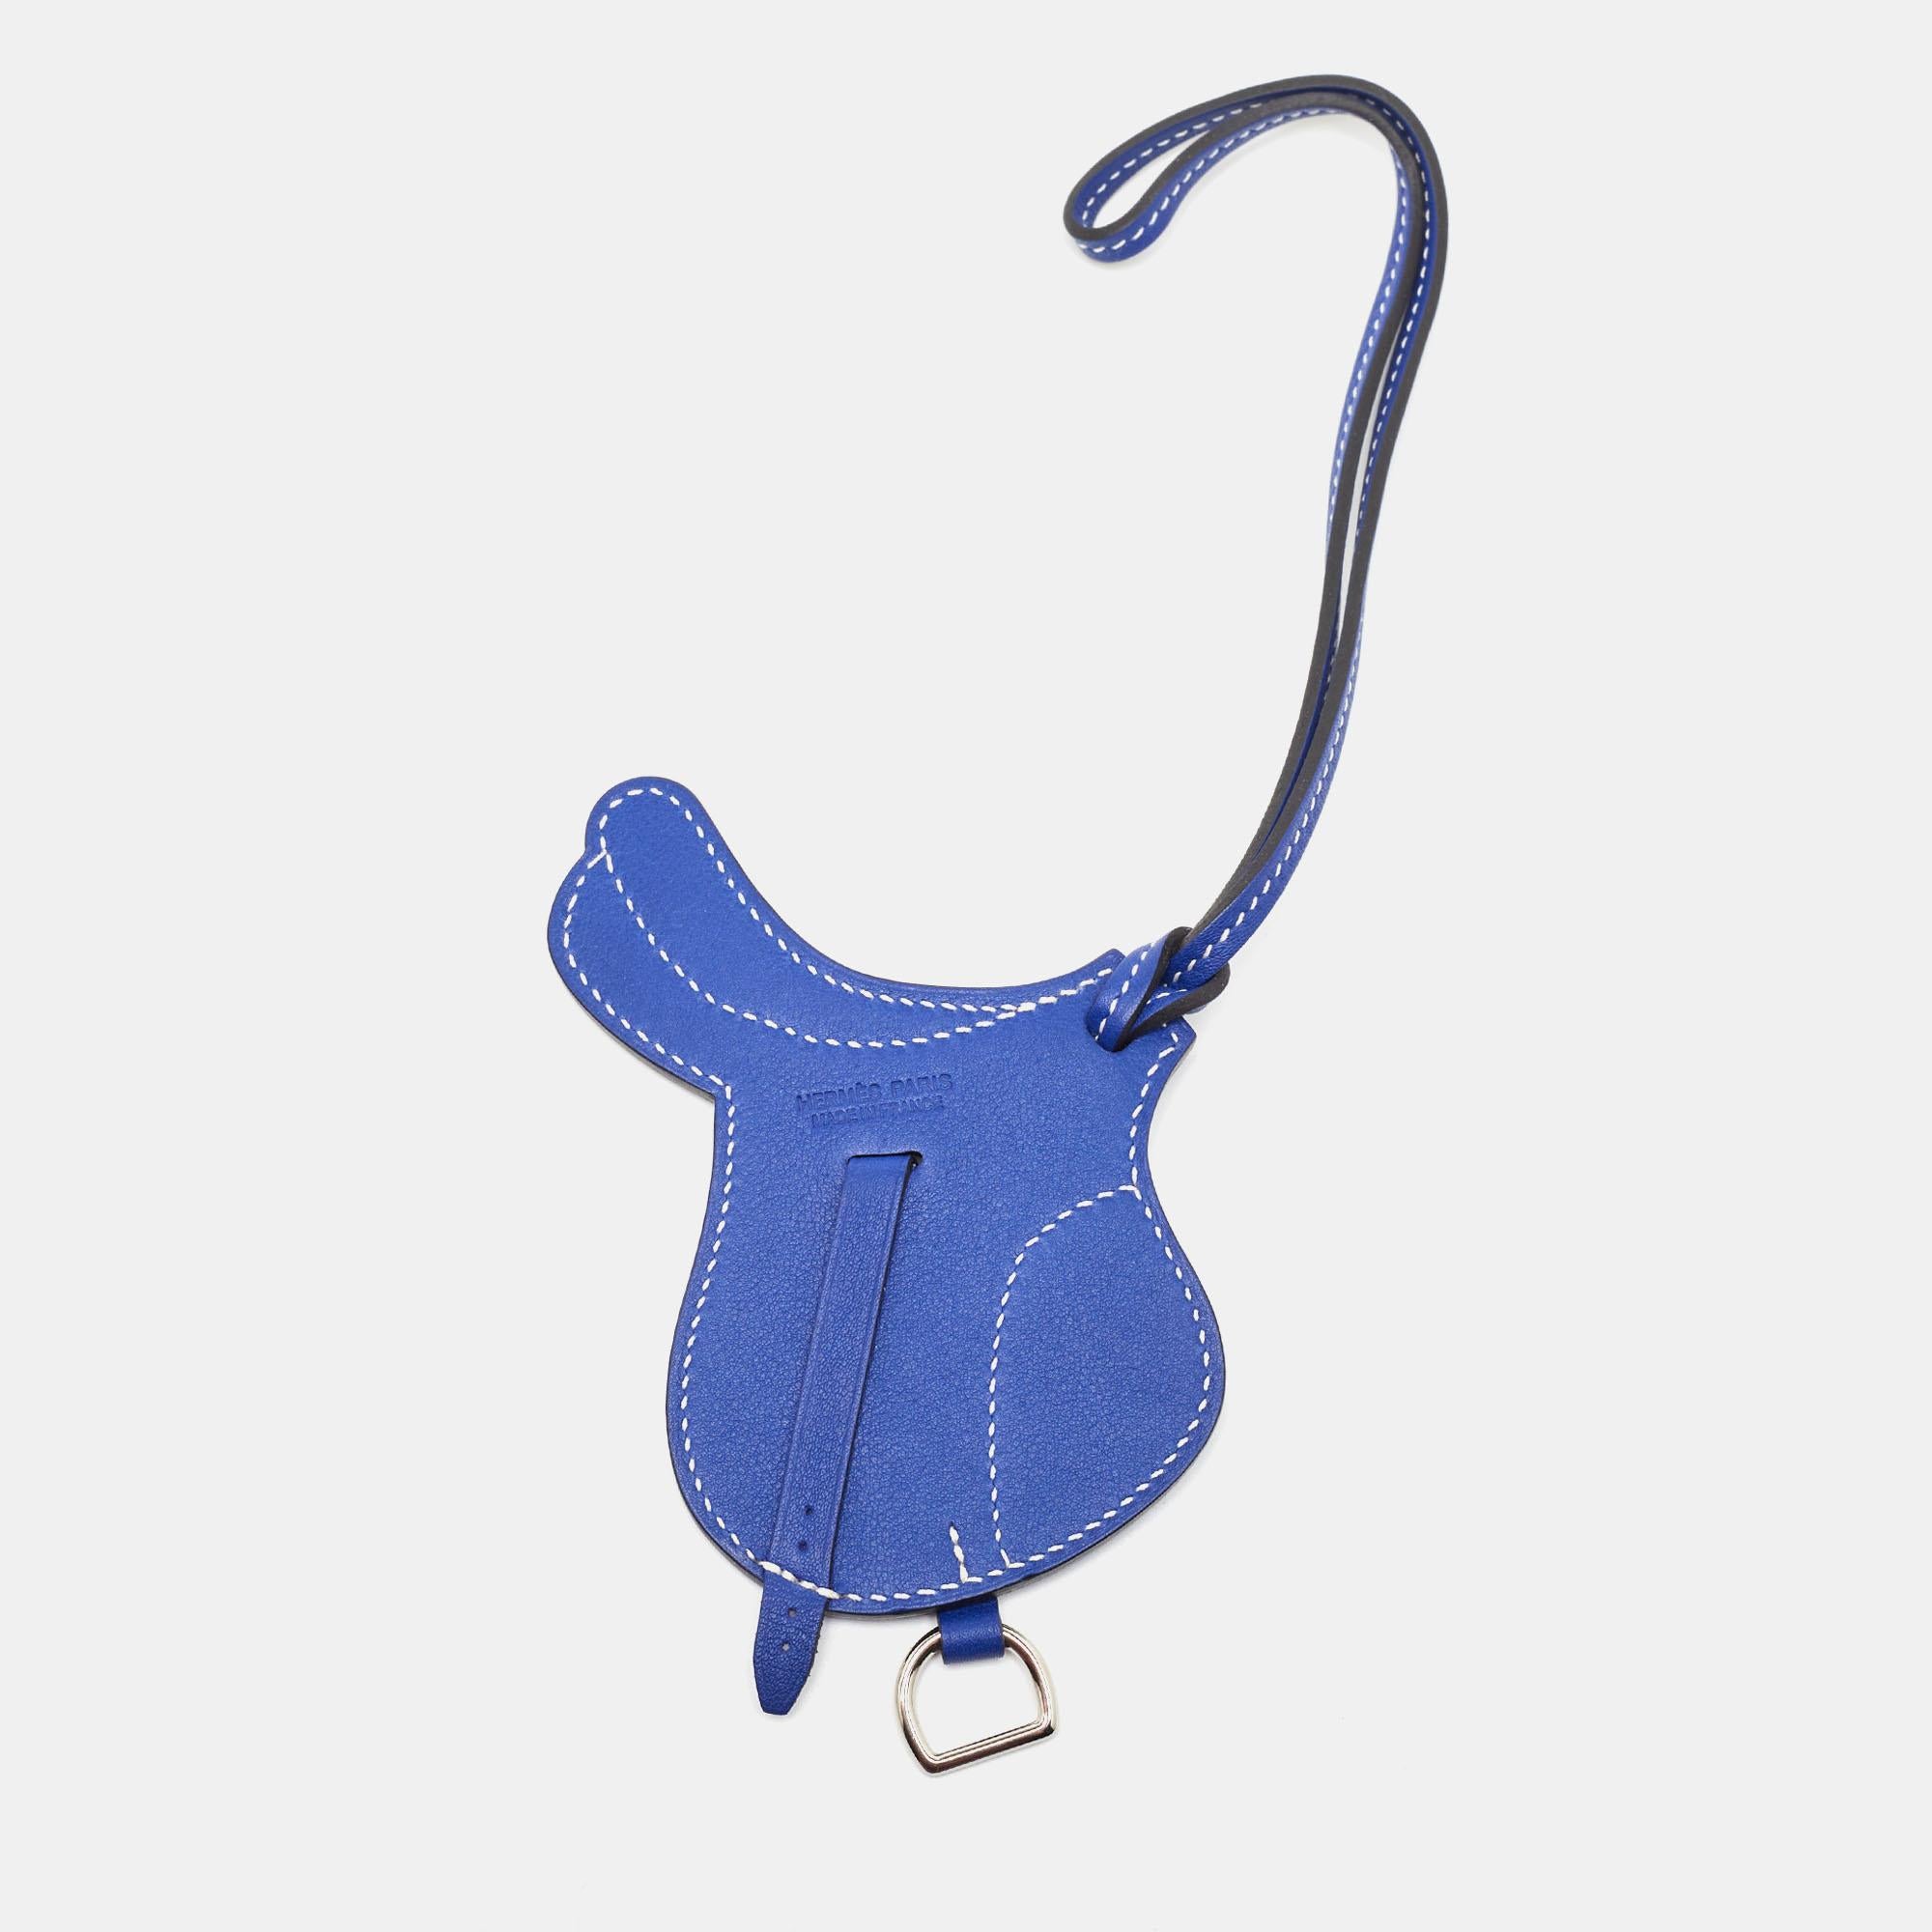 La breloque du sac Paddock Selle d'Hermès est un accessoire exquis réalisé dans un luxueux cuir Swift. Son design se caractérise par une teinte bleue luxueuse. Cette charmante pièce complète parfaitement tous les sacs Hermès, ajoutant une touche